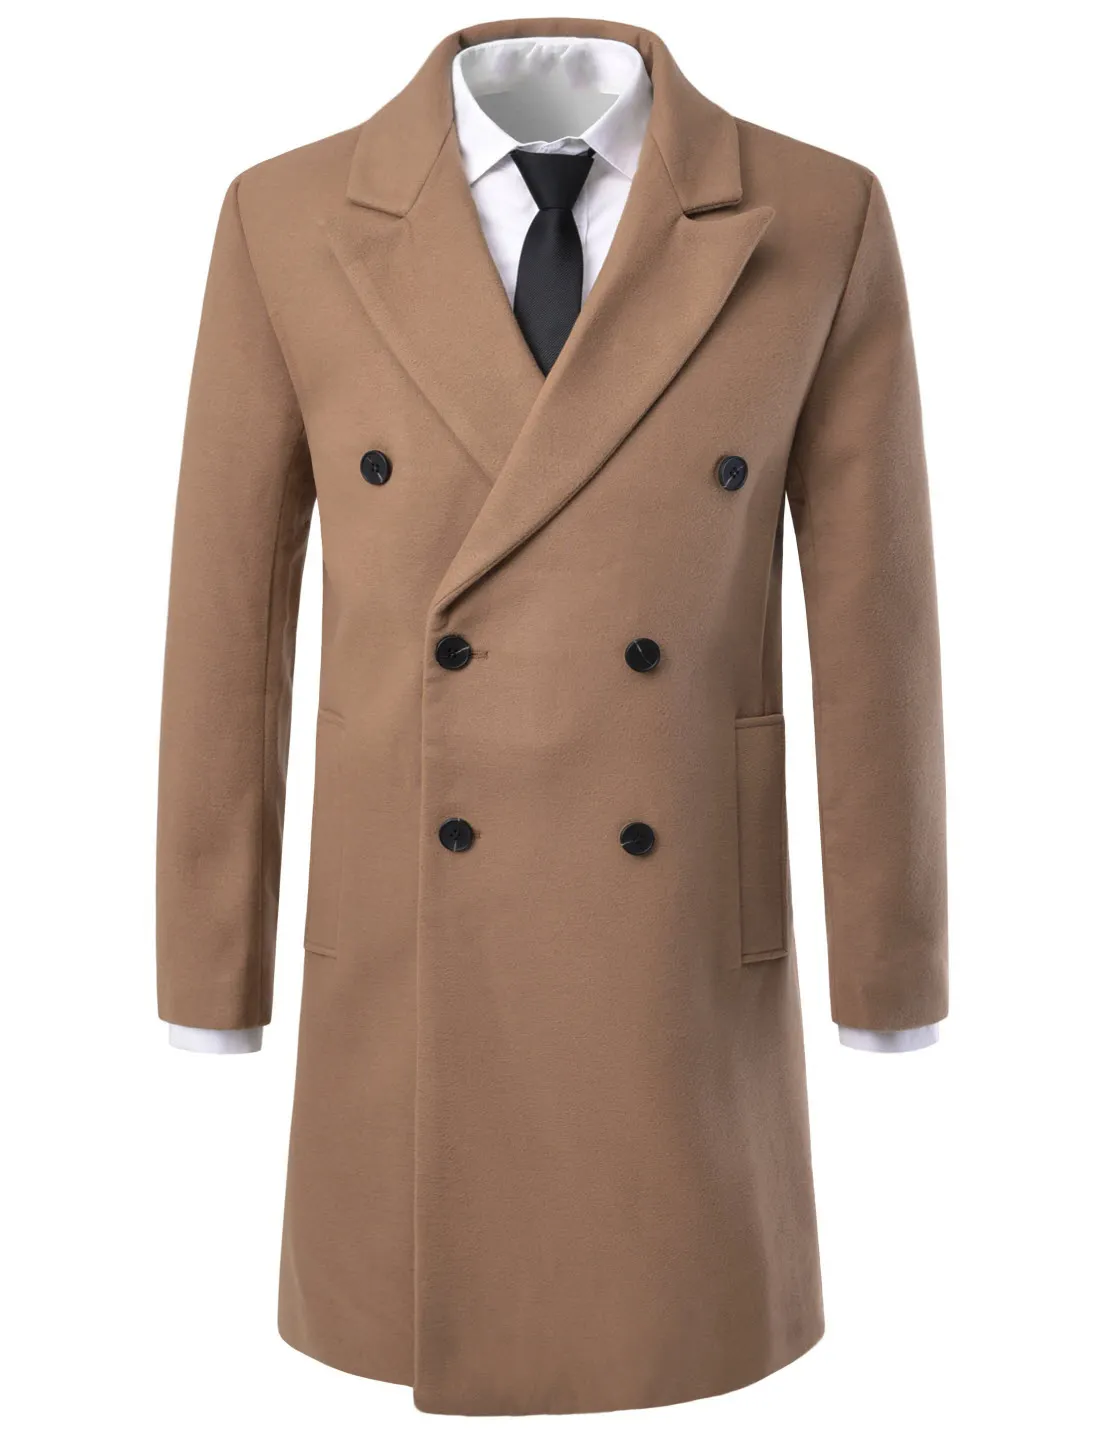 Klasik yeni erkek moda mont yün uzun erkek ceket sonbahar ve kış sezonu erkek yün ceket orta en iyi kalite kahverengi renk